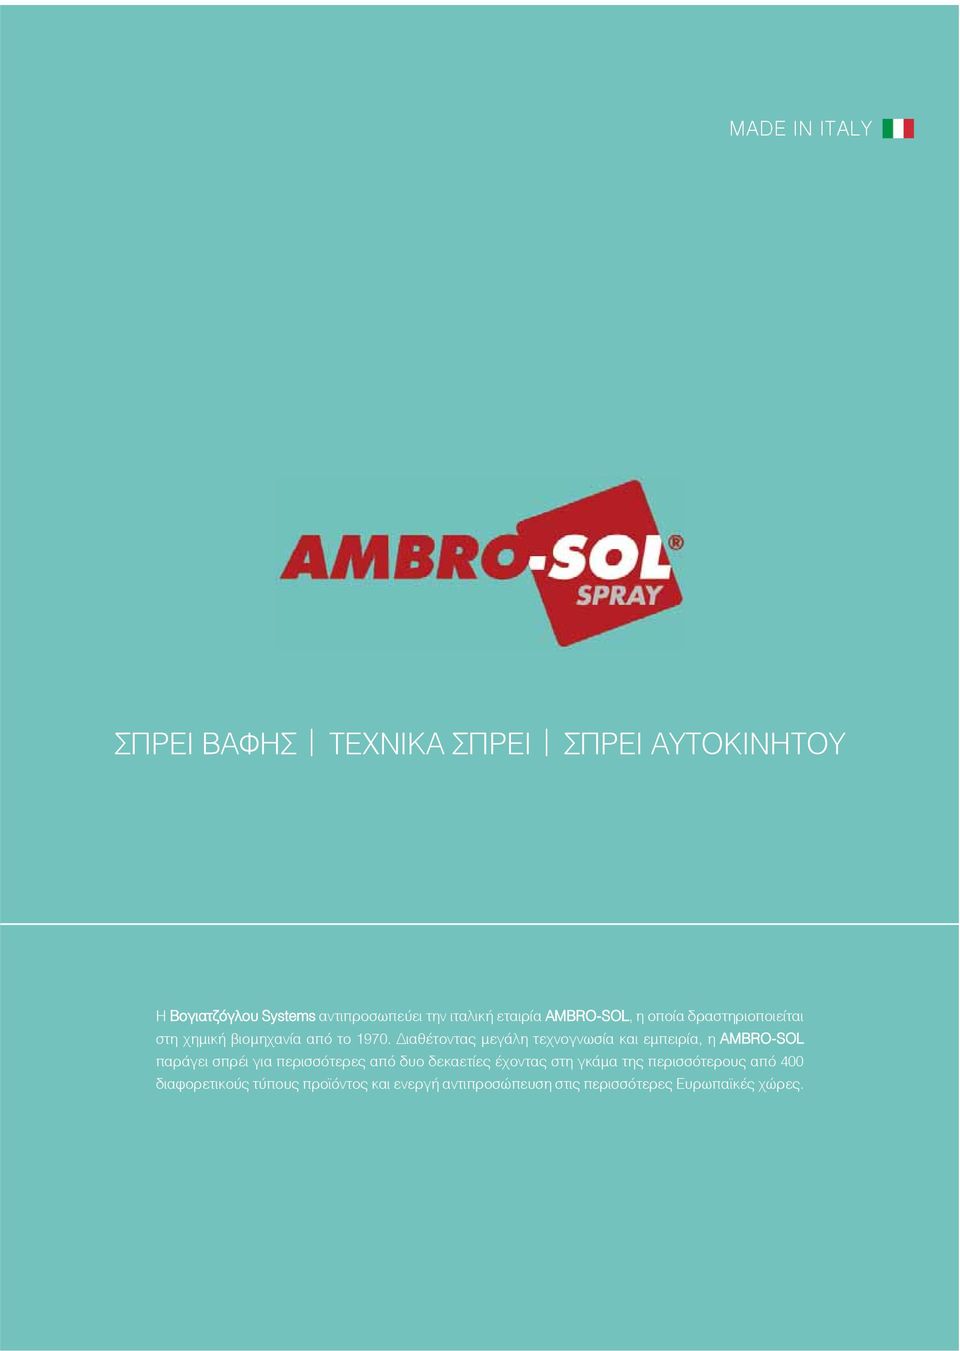 Διαθέτοντας μεγάλη τεχνογνωσία και εμπειρία, η AMBROSOL παράγει σπρέι για περισσότερες από δυο δεκαετίες